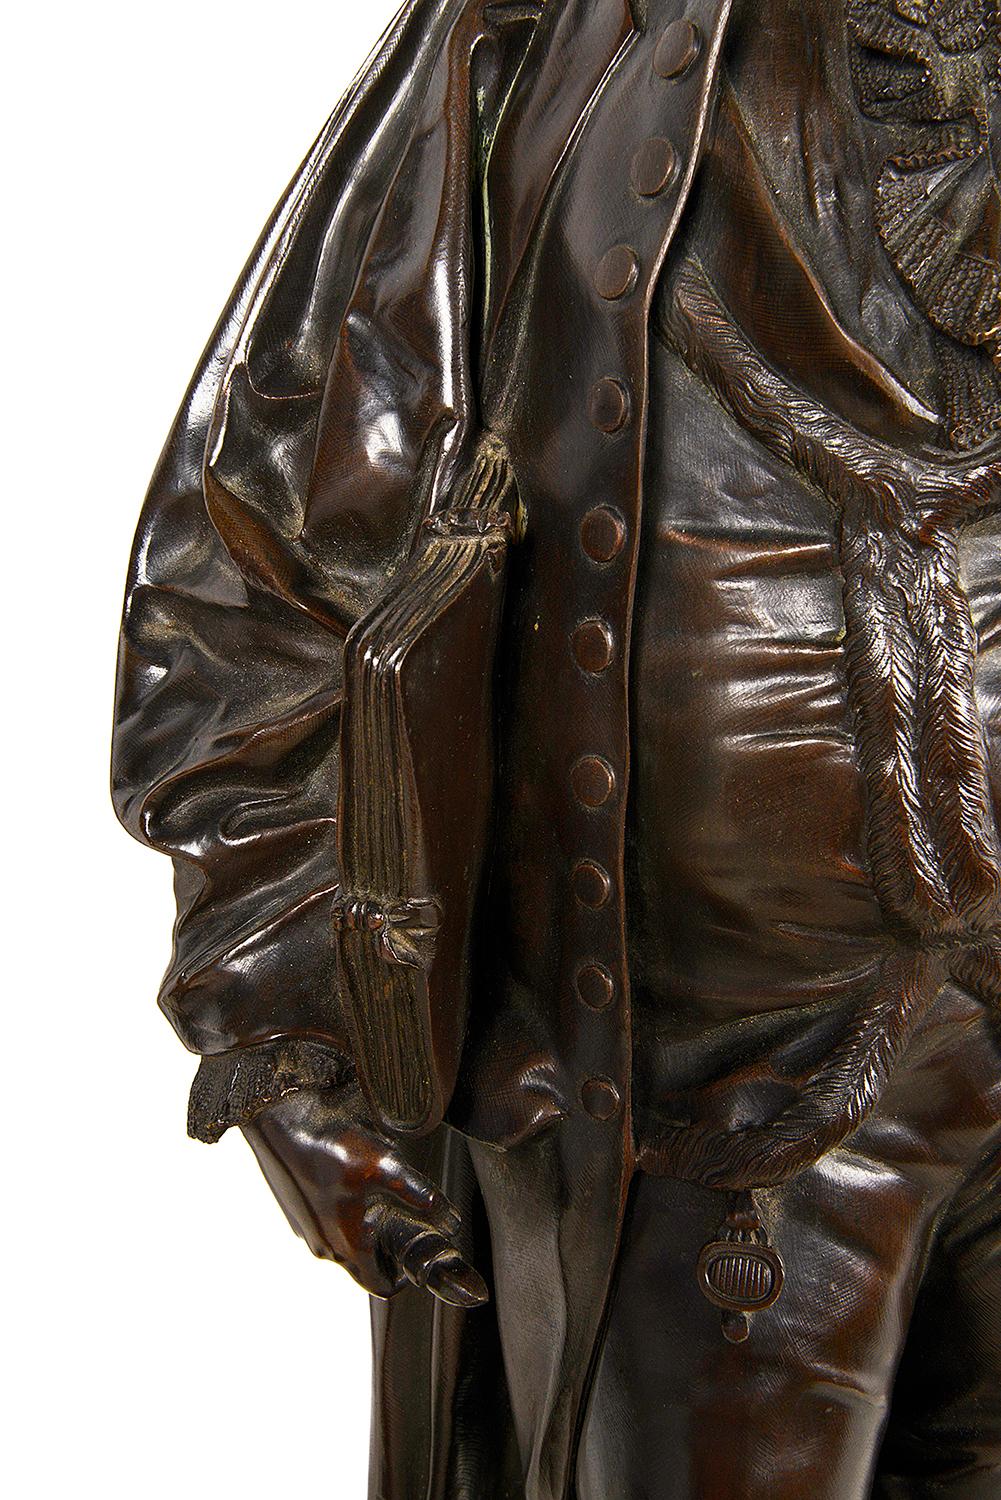 Patiné Statues en bronze du XIXe siècle de Hogarth et Reynolds en vente